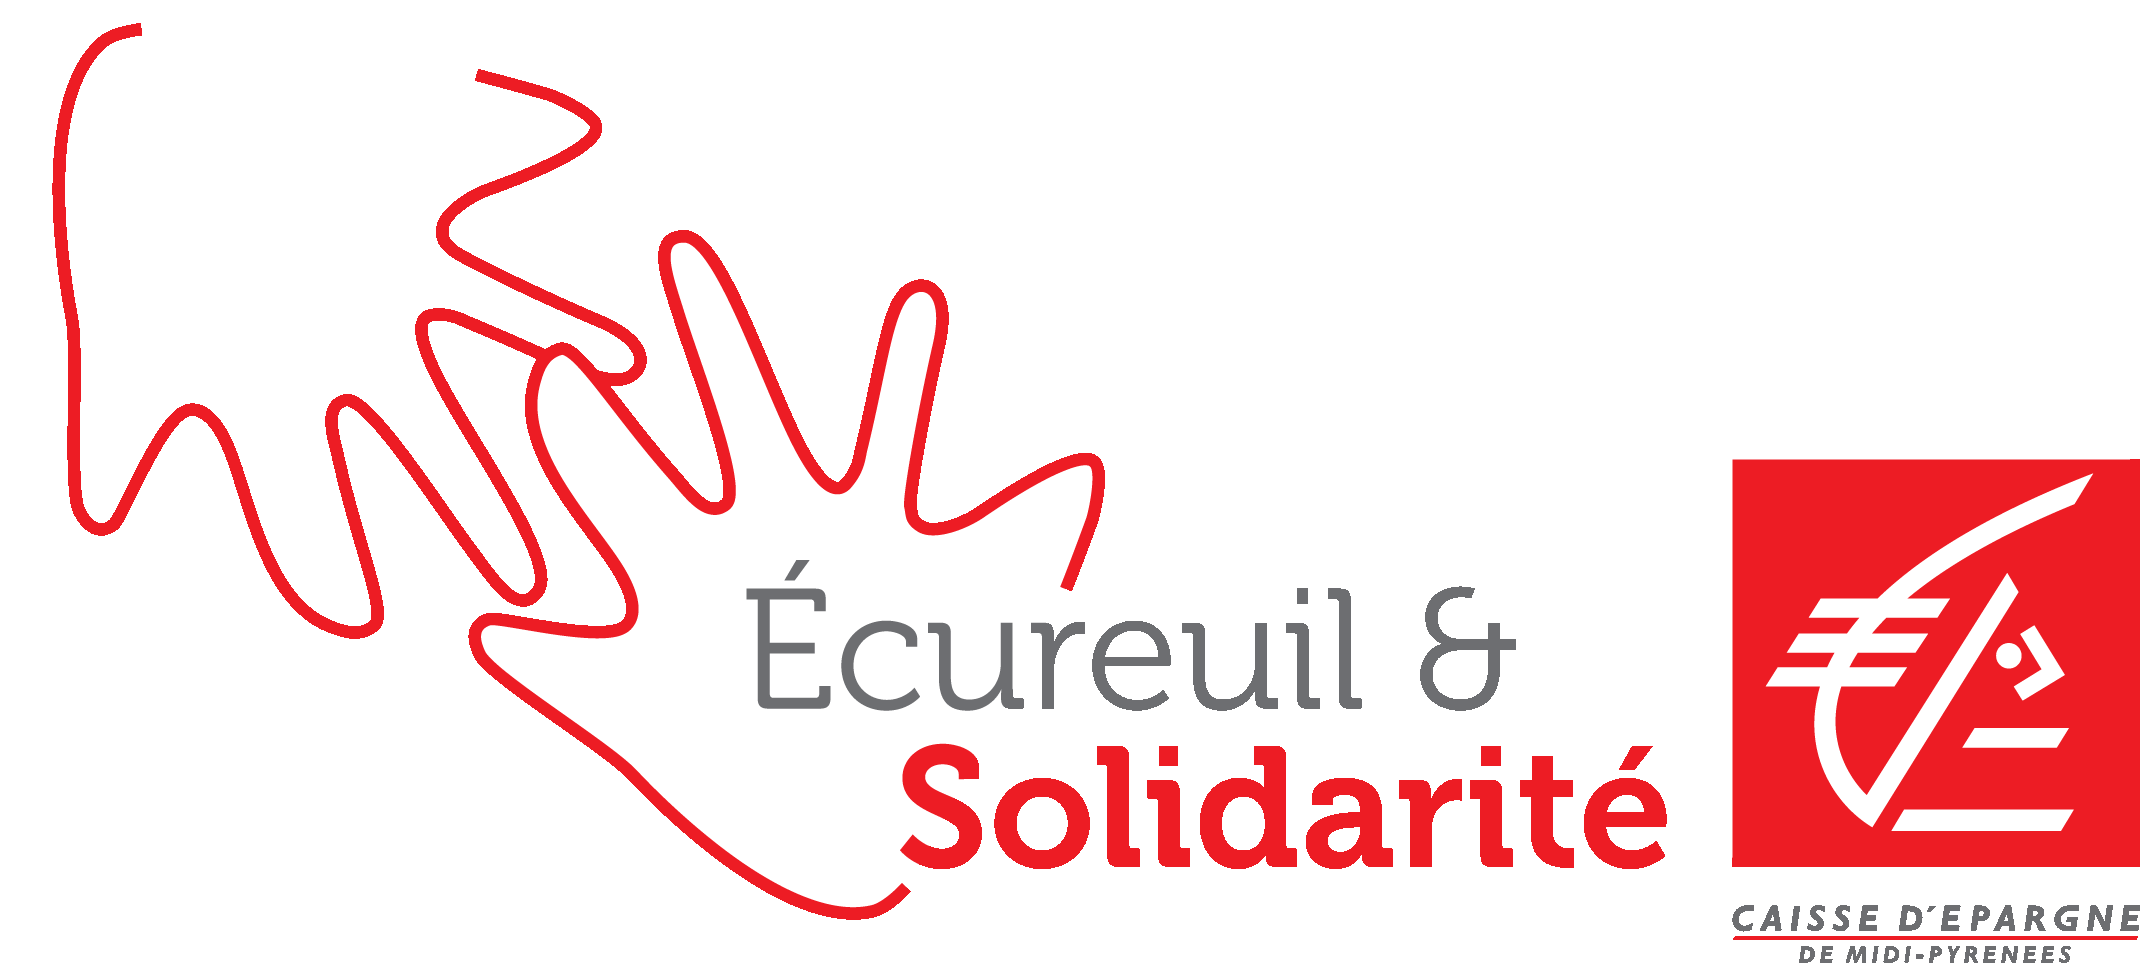 Caisse d'épargne - Écureuil et Solidarité